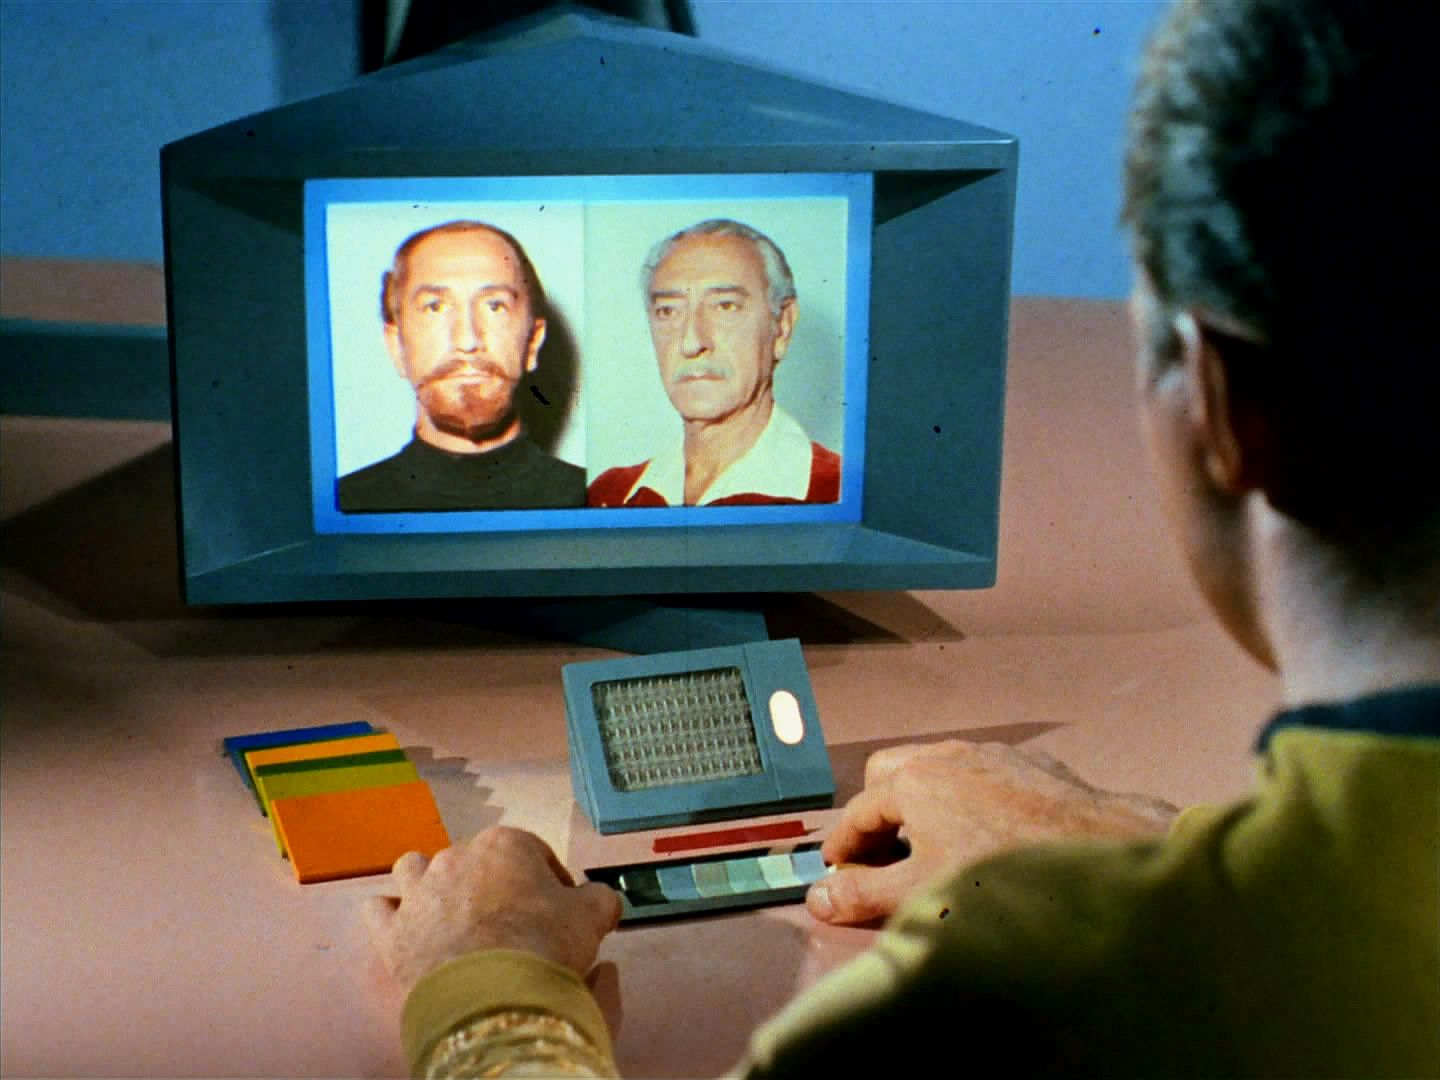 Kirk mu nevěří, po masakru se přeci našlo Kodosovo ohořelé tělo. Přesto na Enterprise začíná pátrat. Kodos z roku 2246 by klidně mohl být shakespearovský herec Anton Karidian.